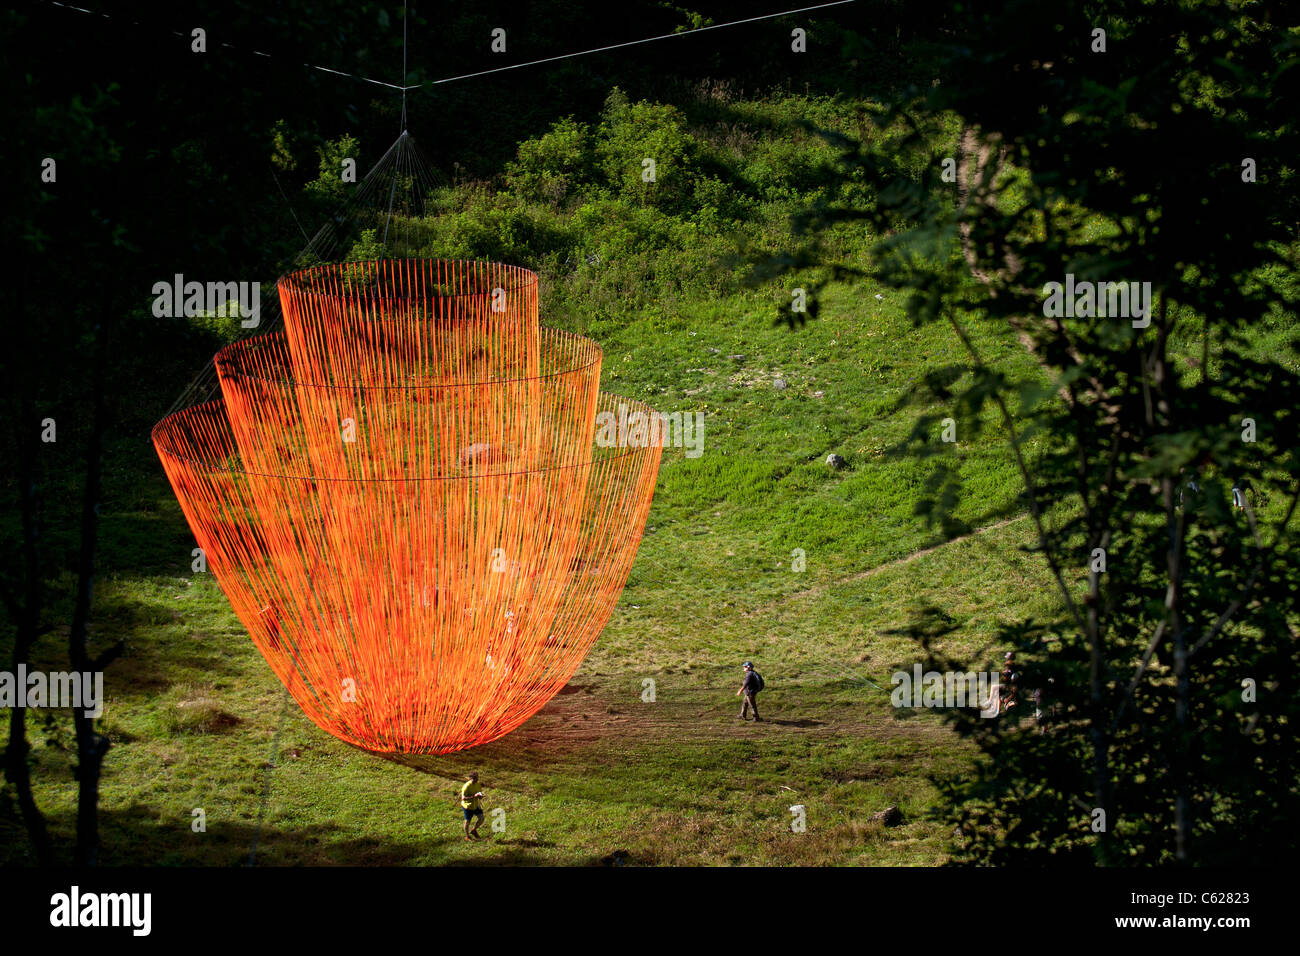 Il Molo Fabre's Land Art Work denominato "risveglio". Sospeso gigante scultura mobile con nastri di colore arancione. Foto Stock